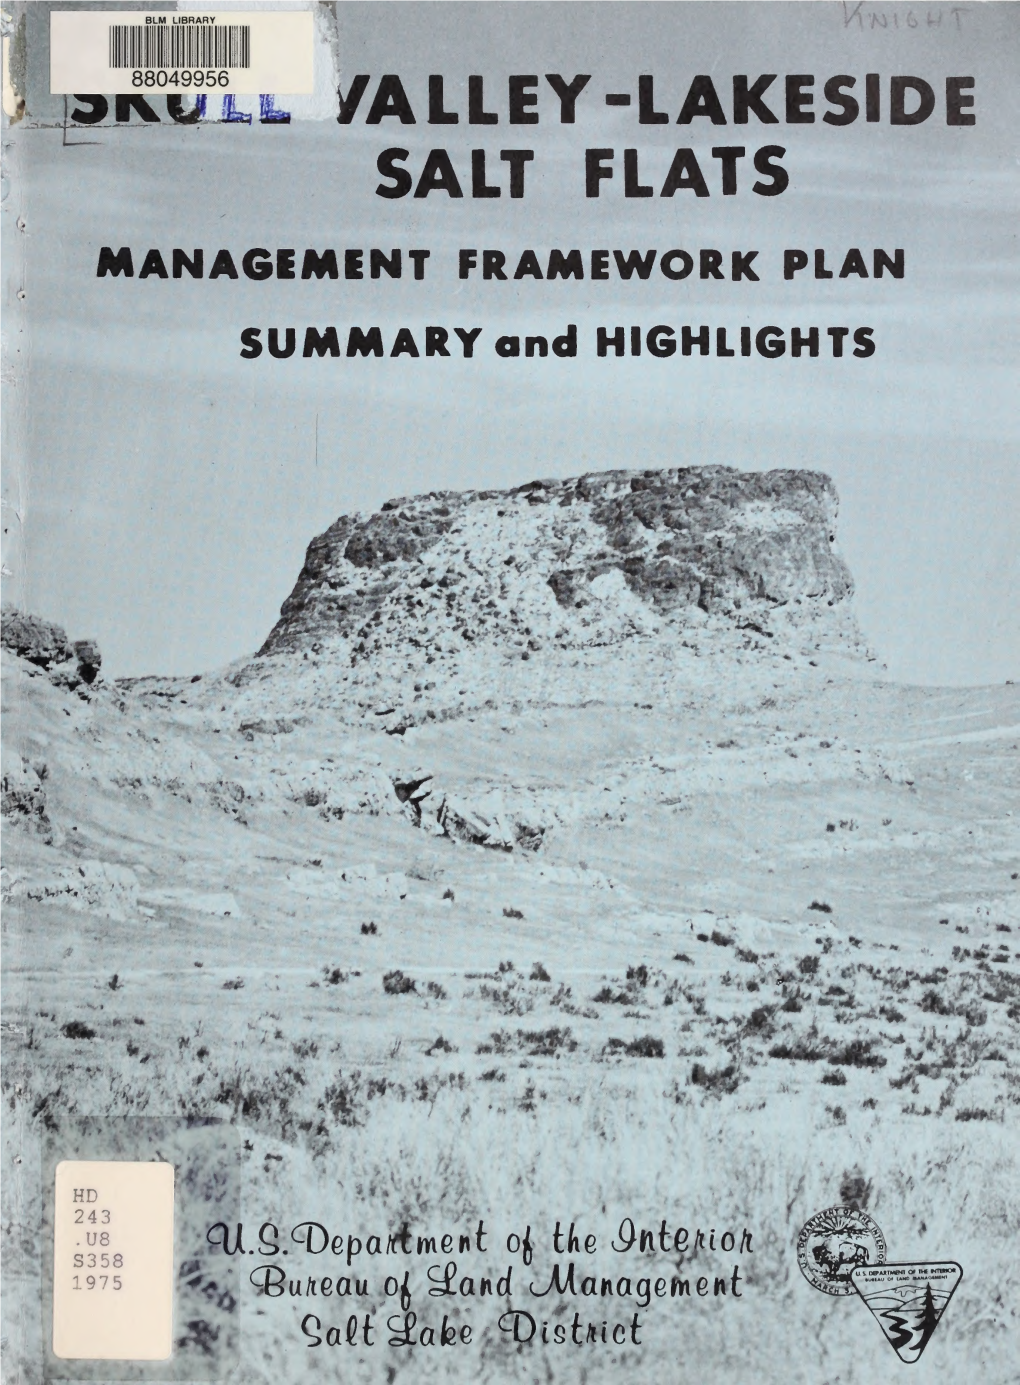 Skull Valley-Lakeside/Salt Flats Management Framework Plan